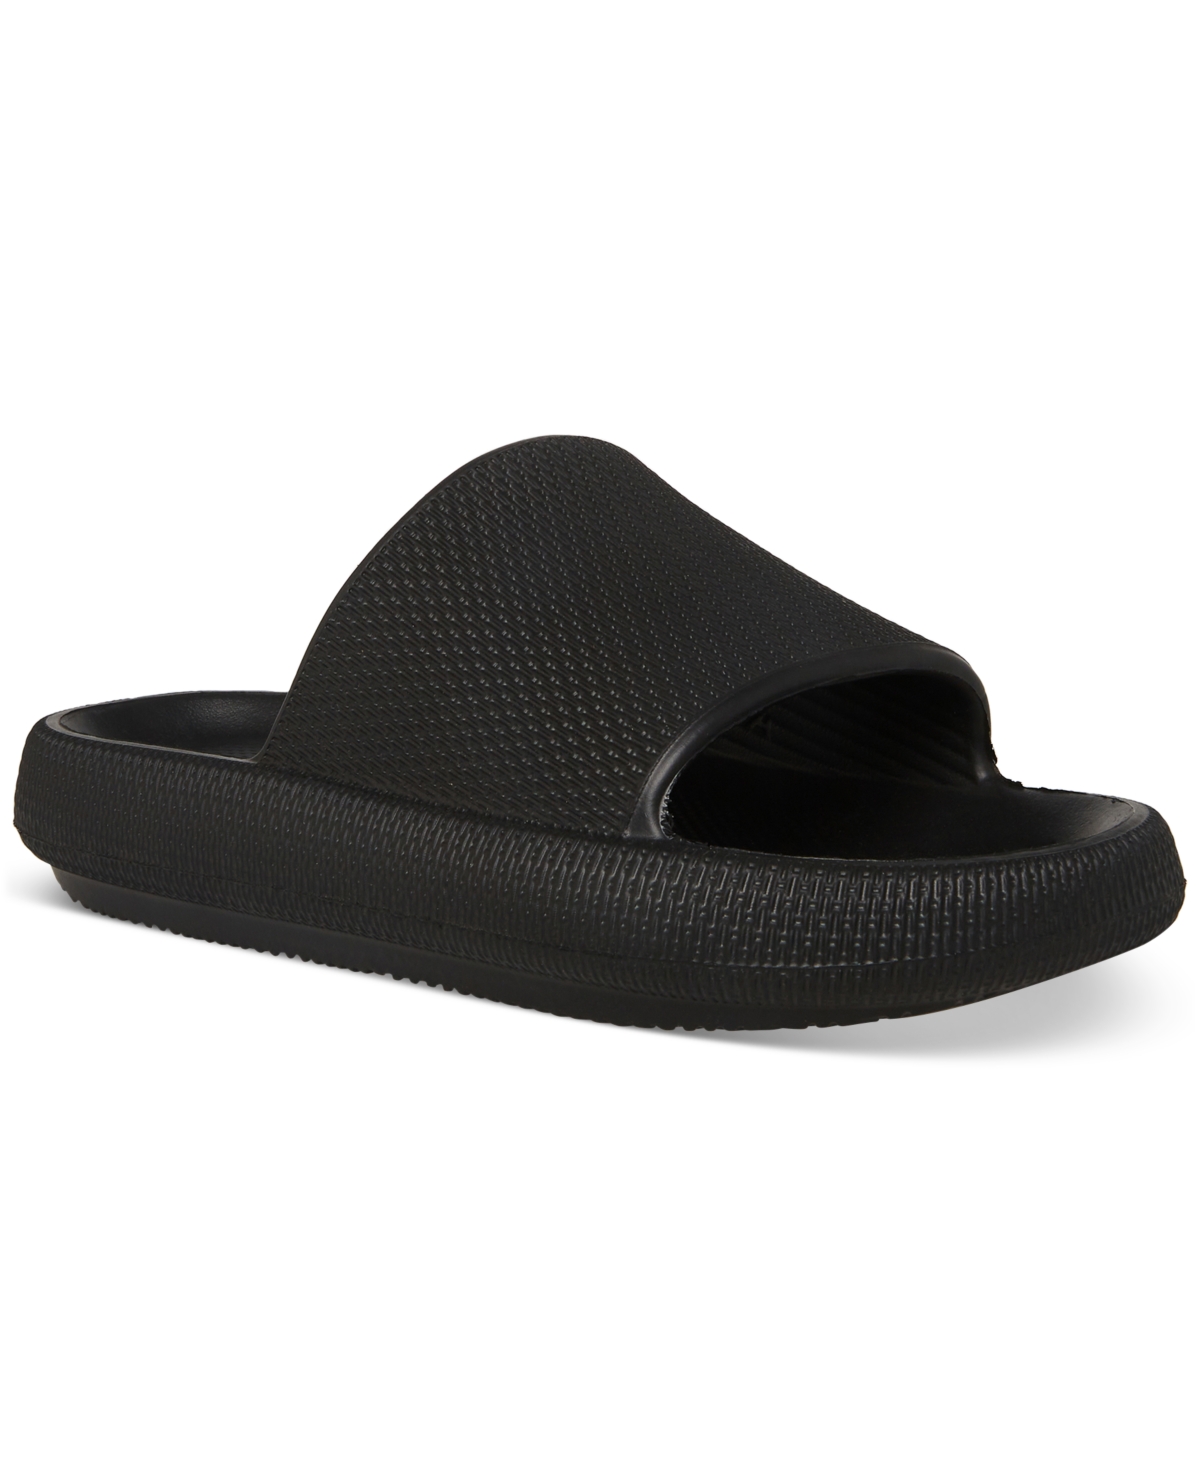 Men's Jaxxed Pool Slide Sandals - Taupe